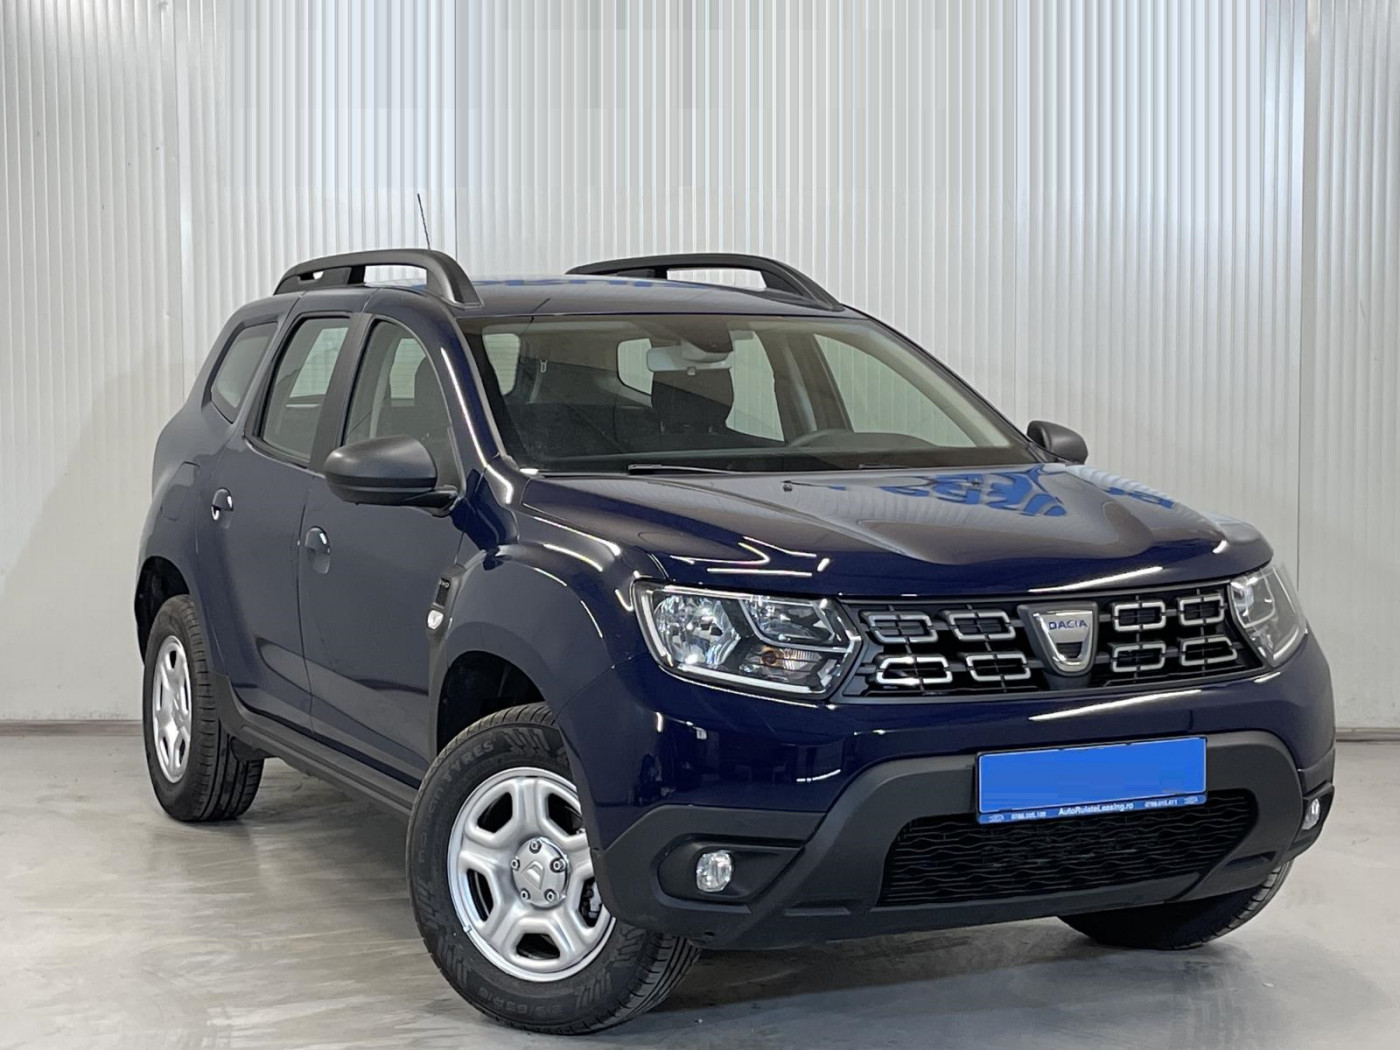 Dacia Duster  109 CP   - 14790 €,   161100 km,  anul 2018,  culoare albastru 